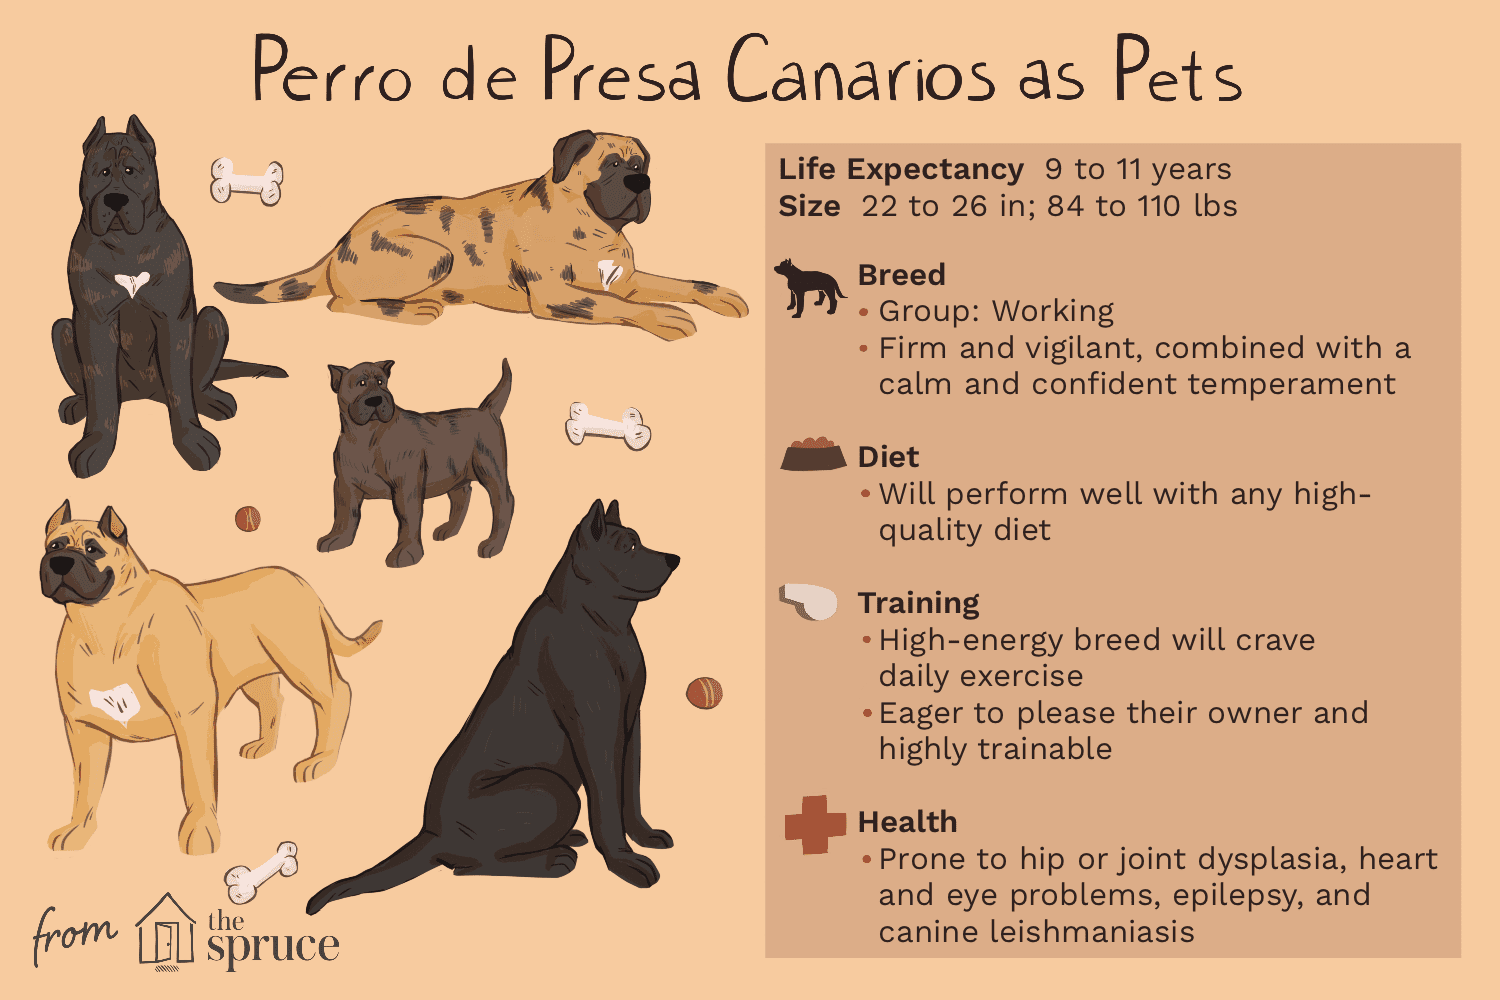 ペロデプレサカナリオ：犬の品種の特徴とケア 